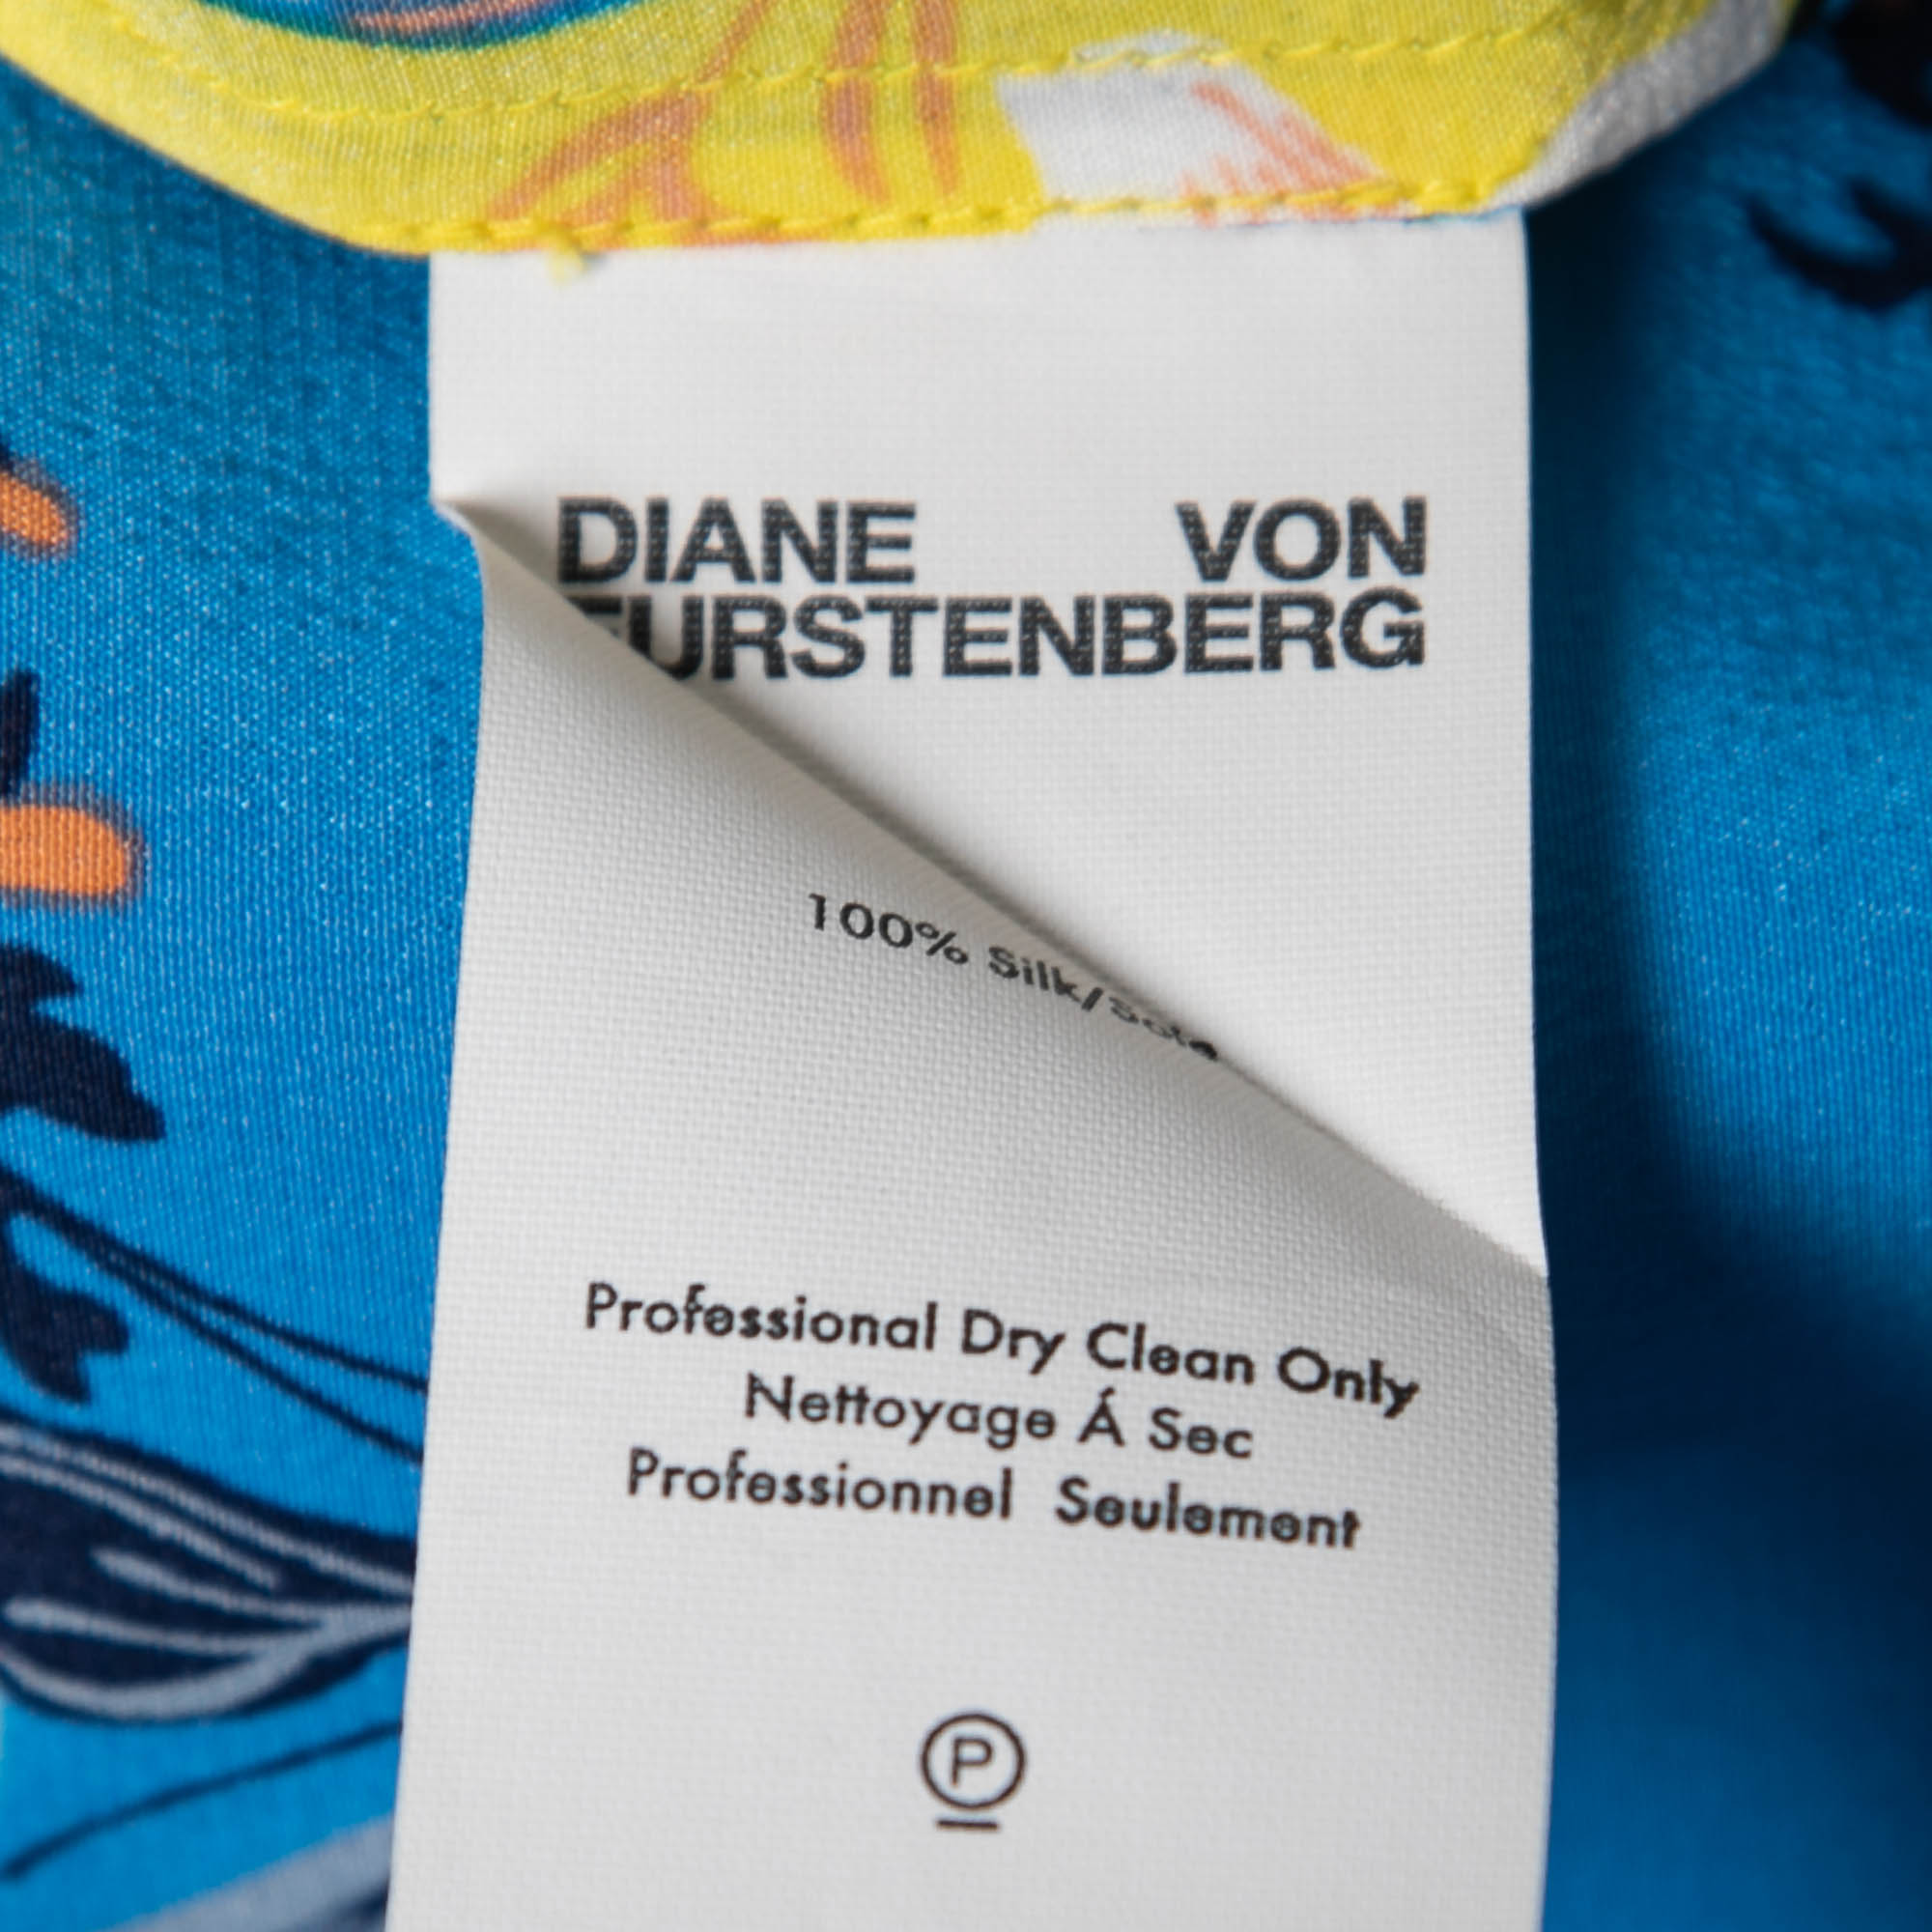 Diane Von Furstenberg Yellow & Blue Floral Printed Silk Sleeveless Top L